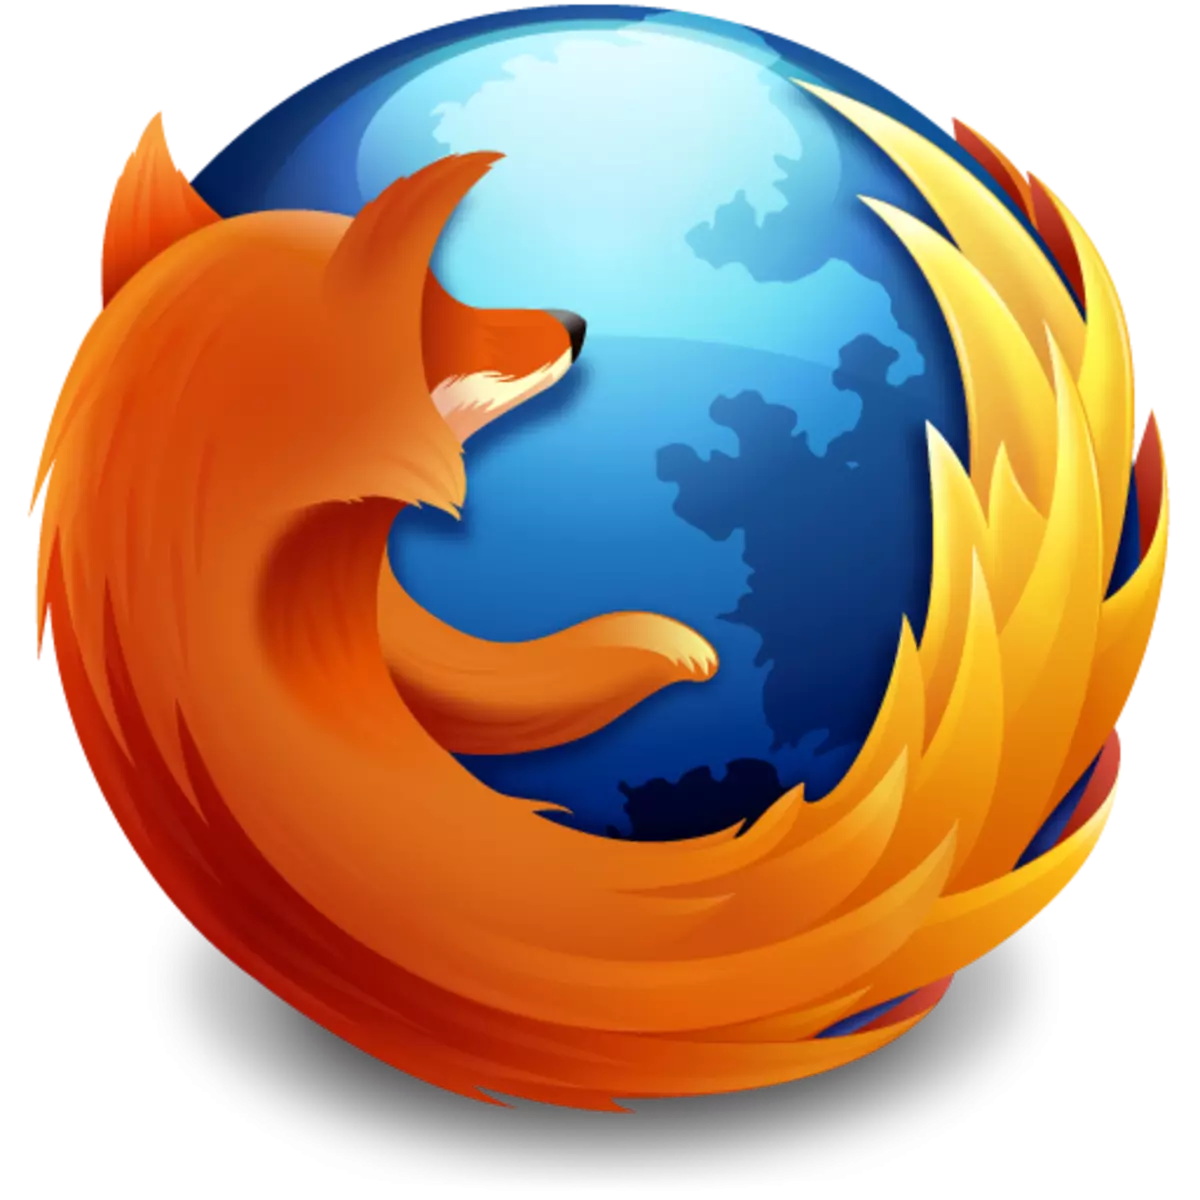 Rregullimi i panelit të shprehur në Firefox